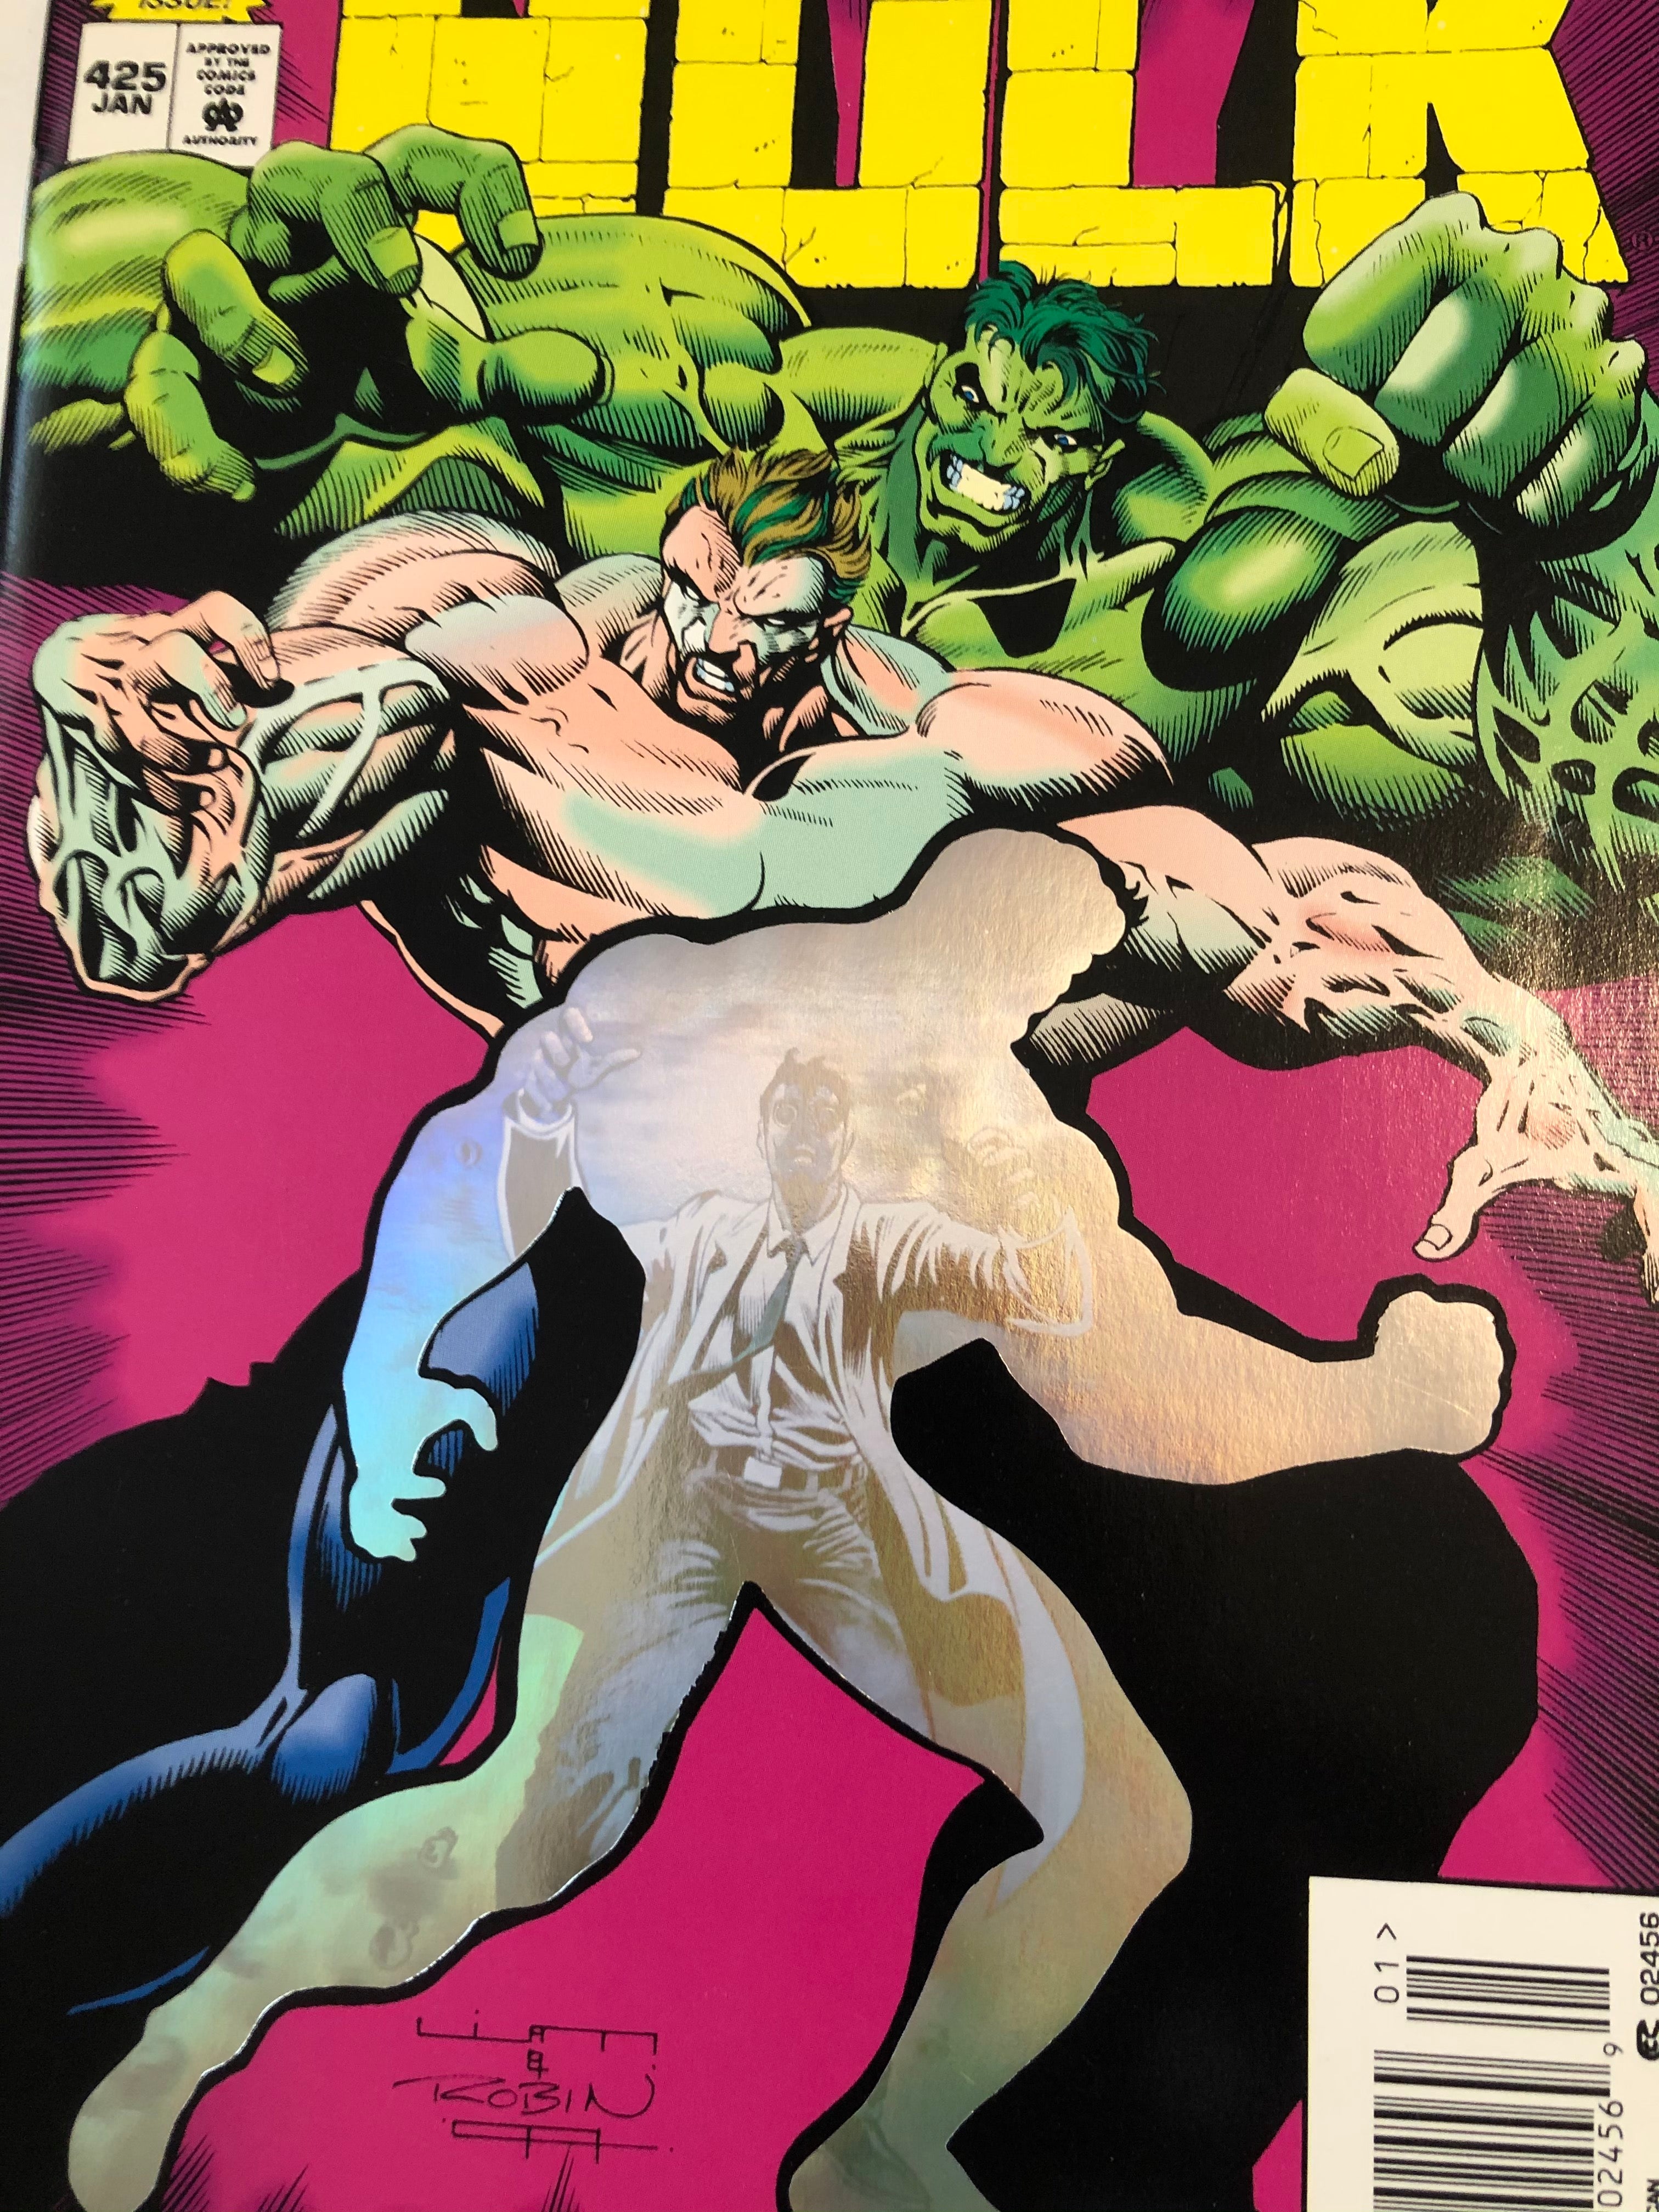 Incredible Hulk #425 hologram cover comic book